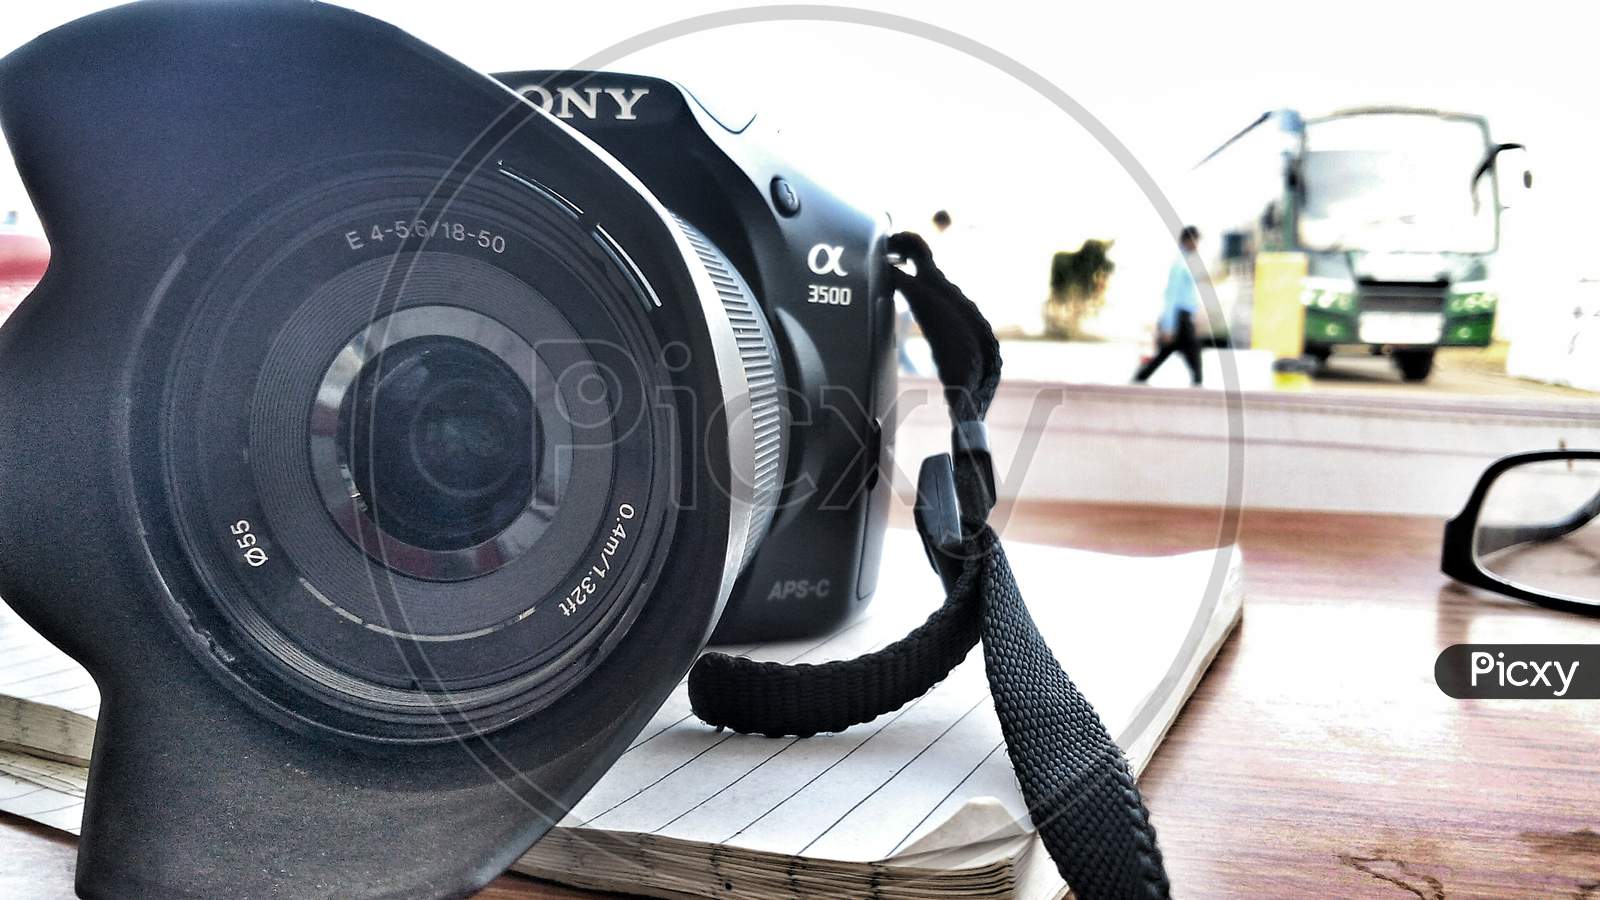 Sony 3500 camera